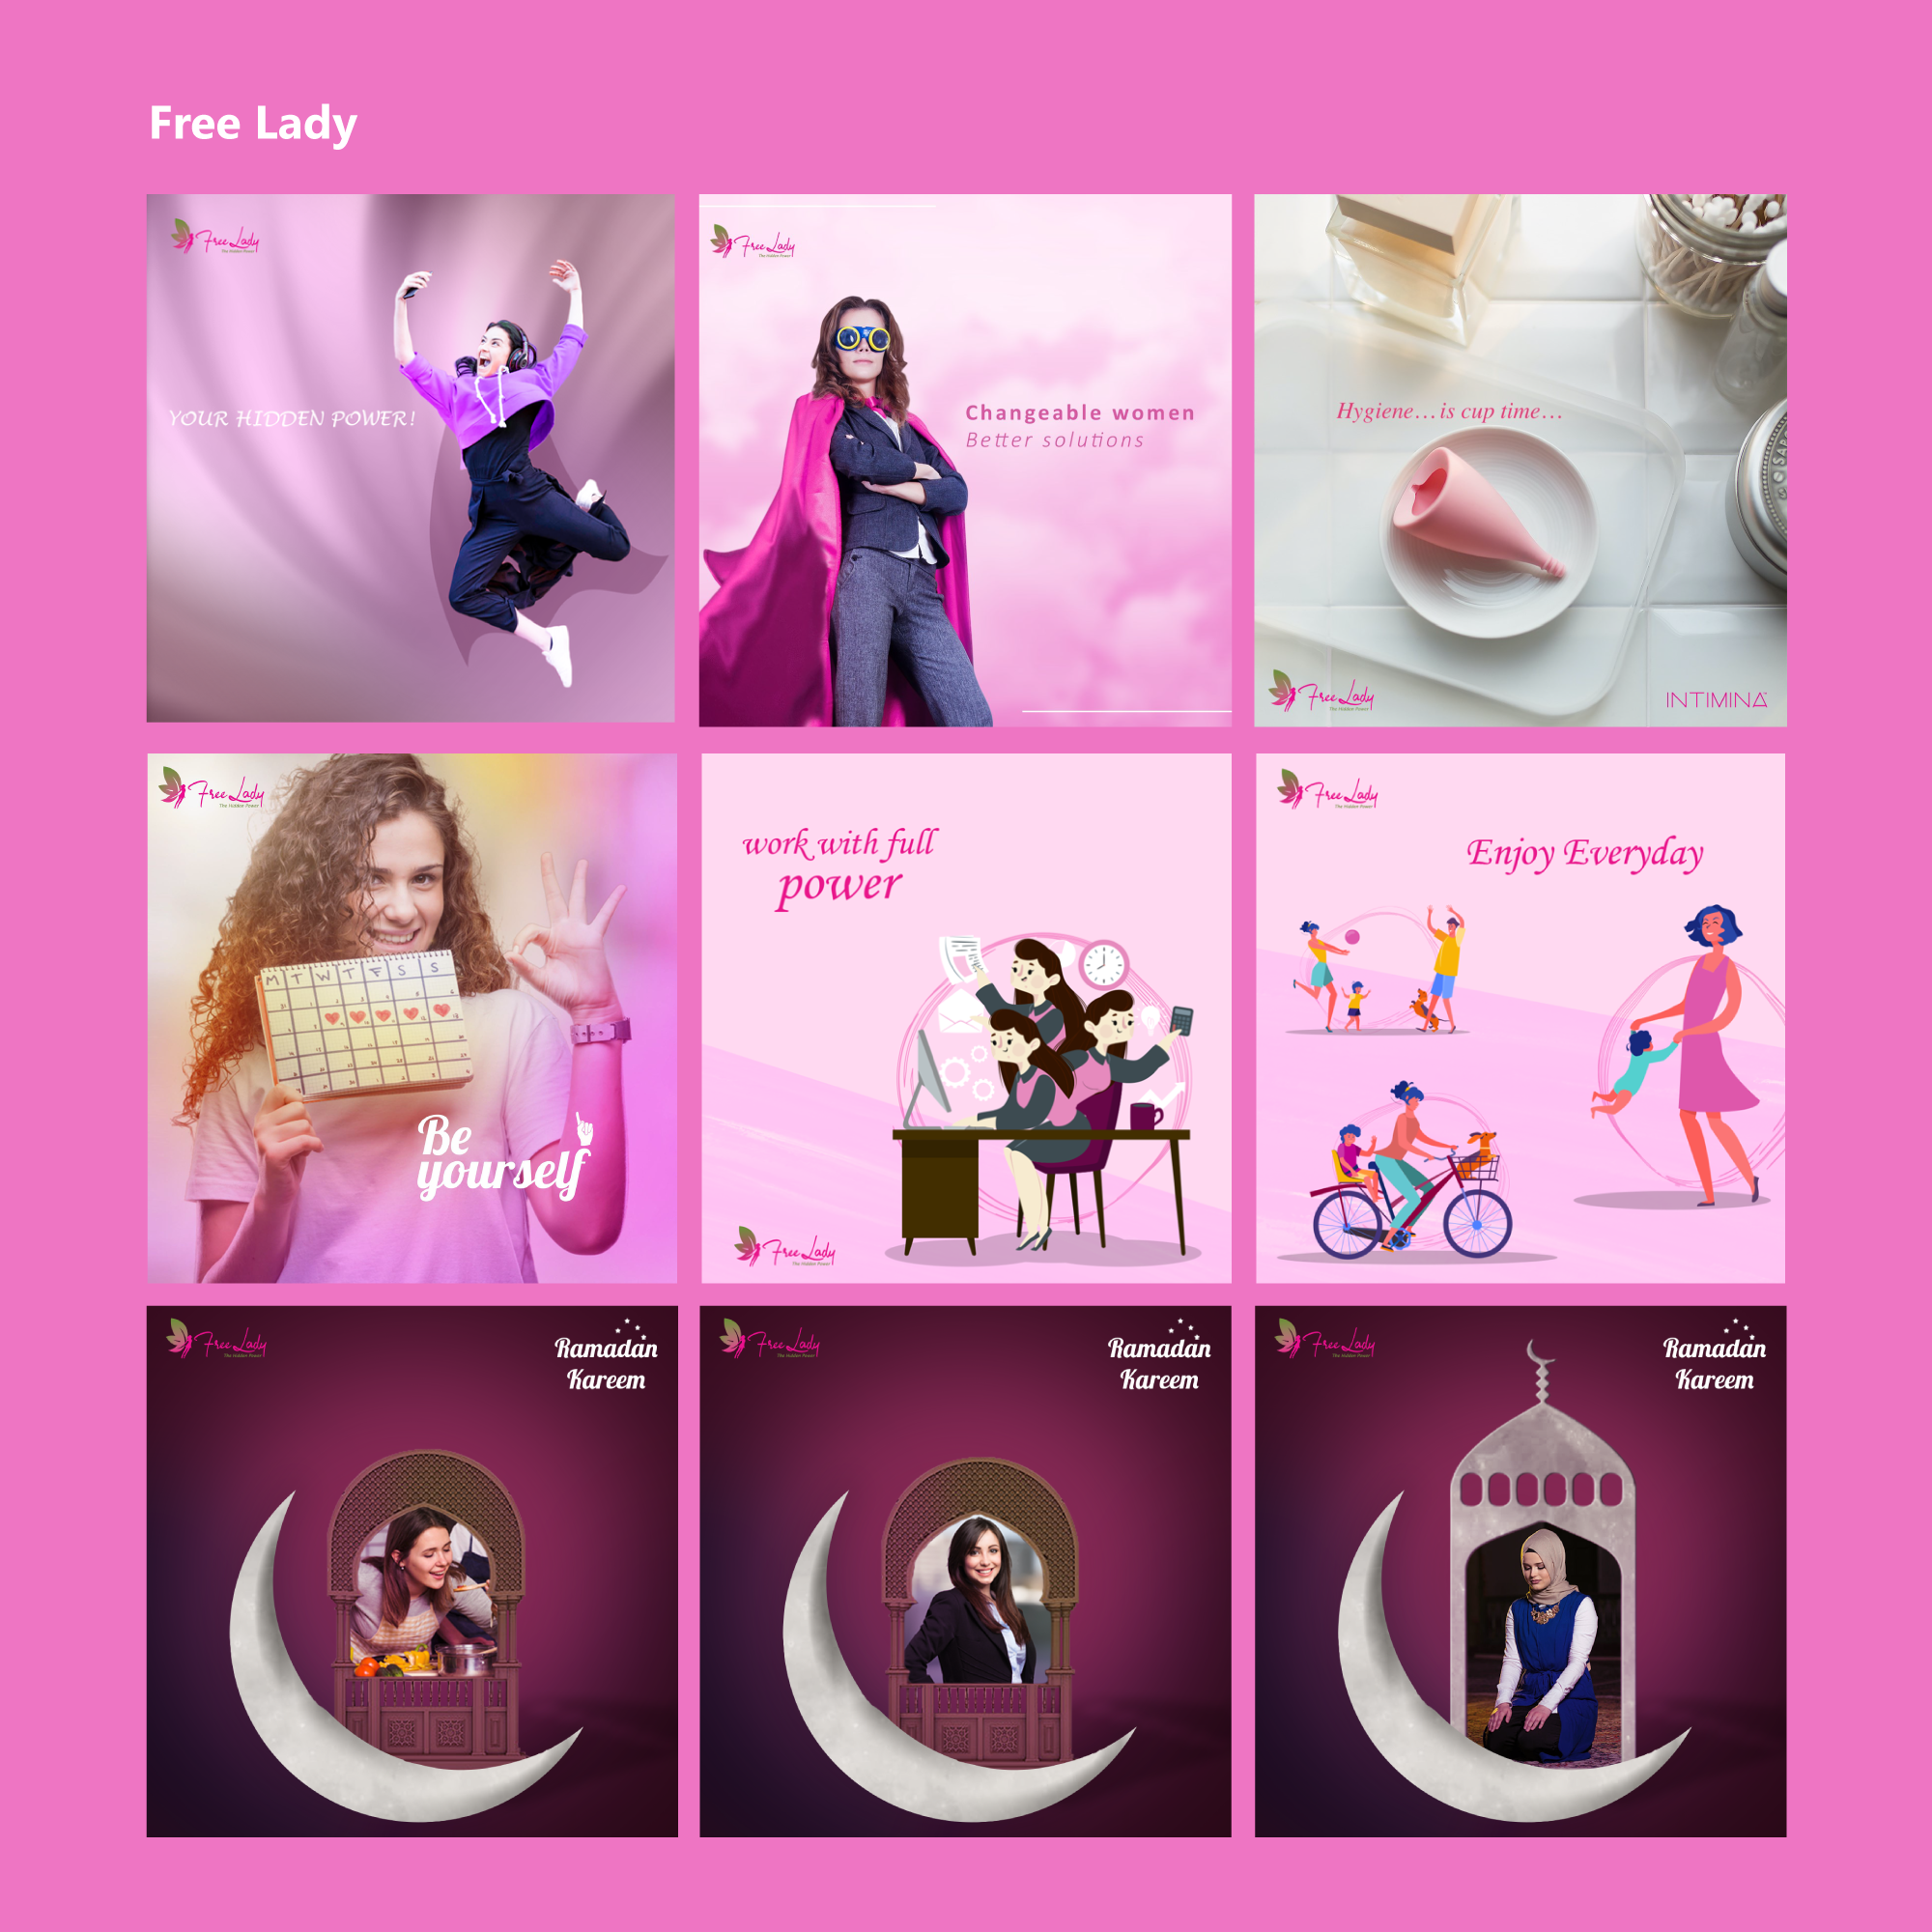 Social Media Designs für Free Lady im Jahr 2020